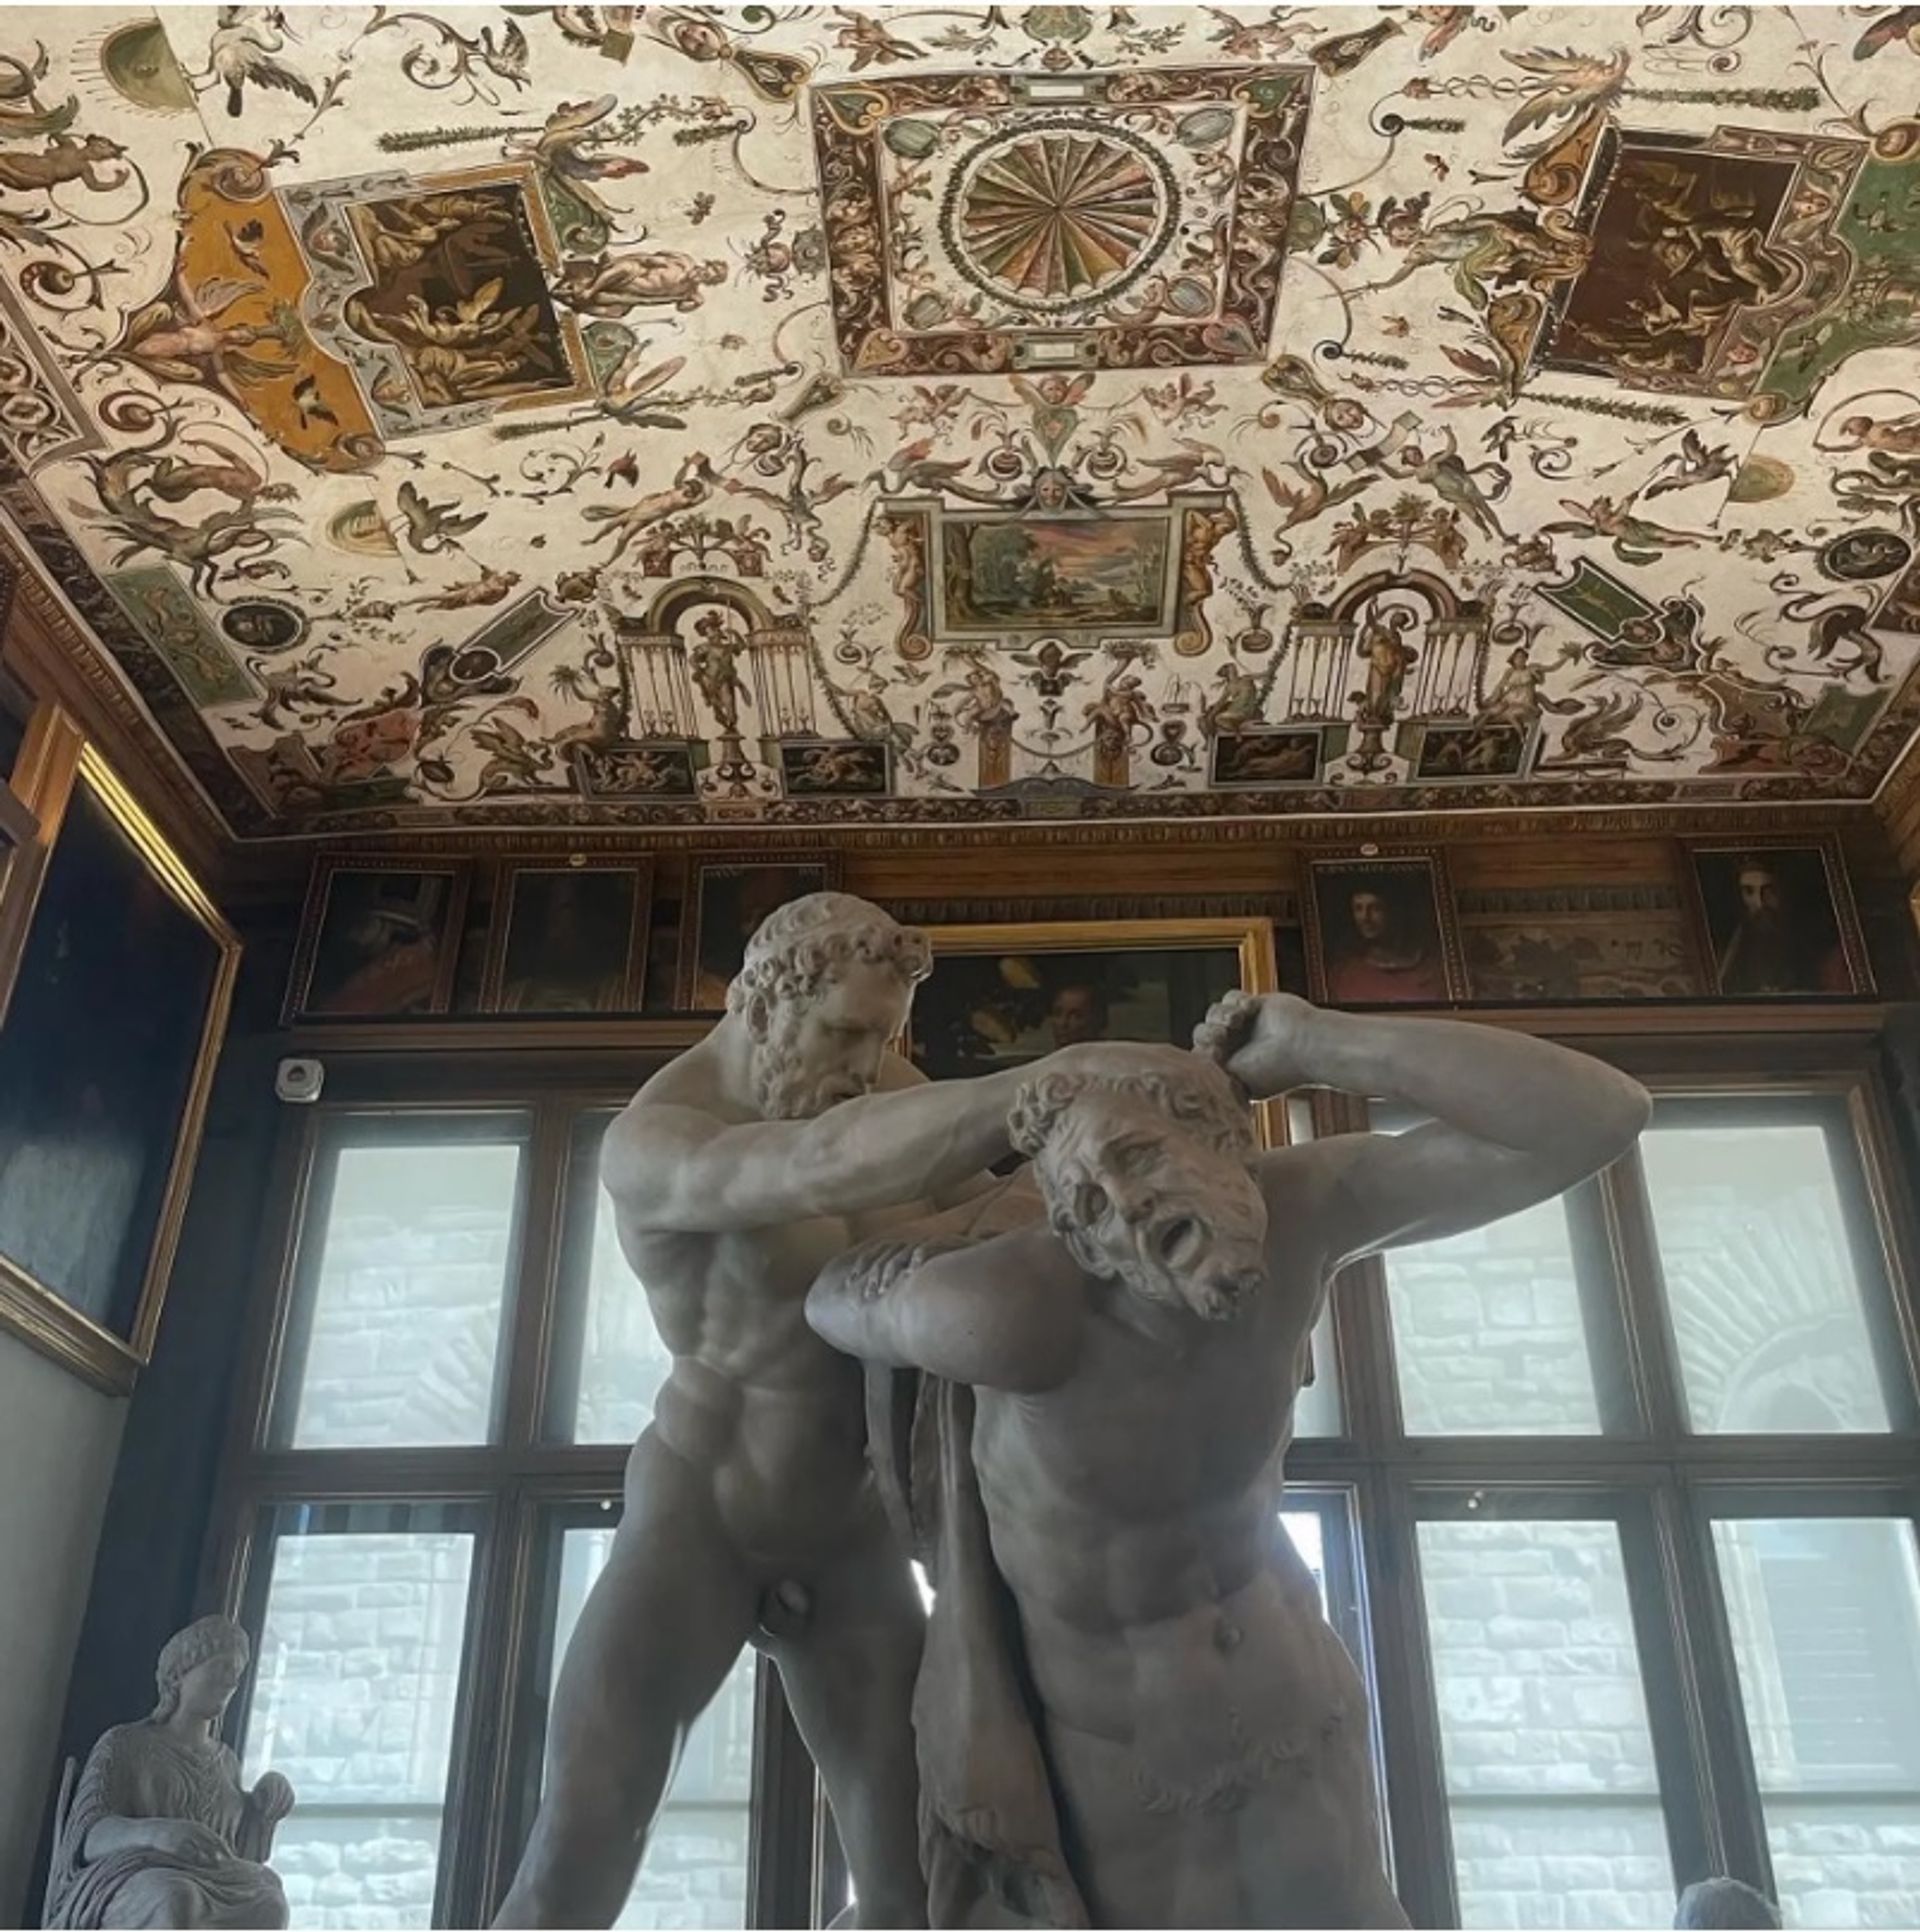 פסל של "הרקולס והקנטאור נסוס" (המאה הראשונה לספירה) ב"גלריות האופיצי", בפירנצה

צילום: The Art Newspaper